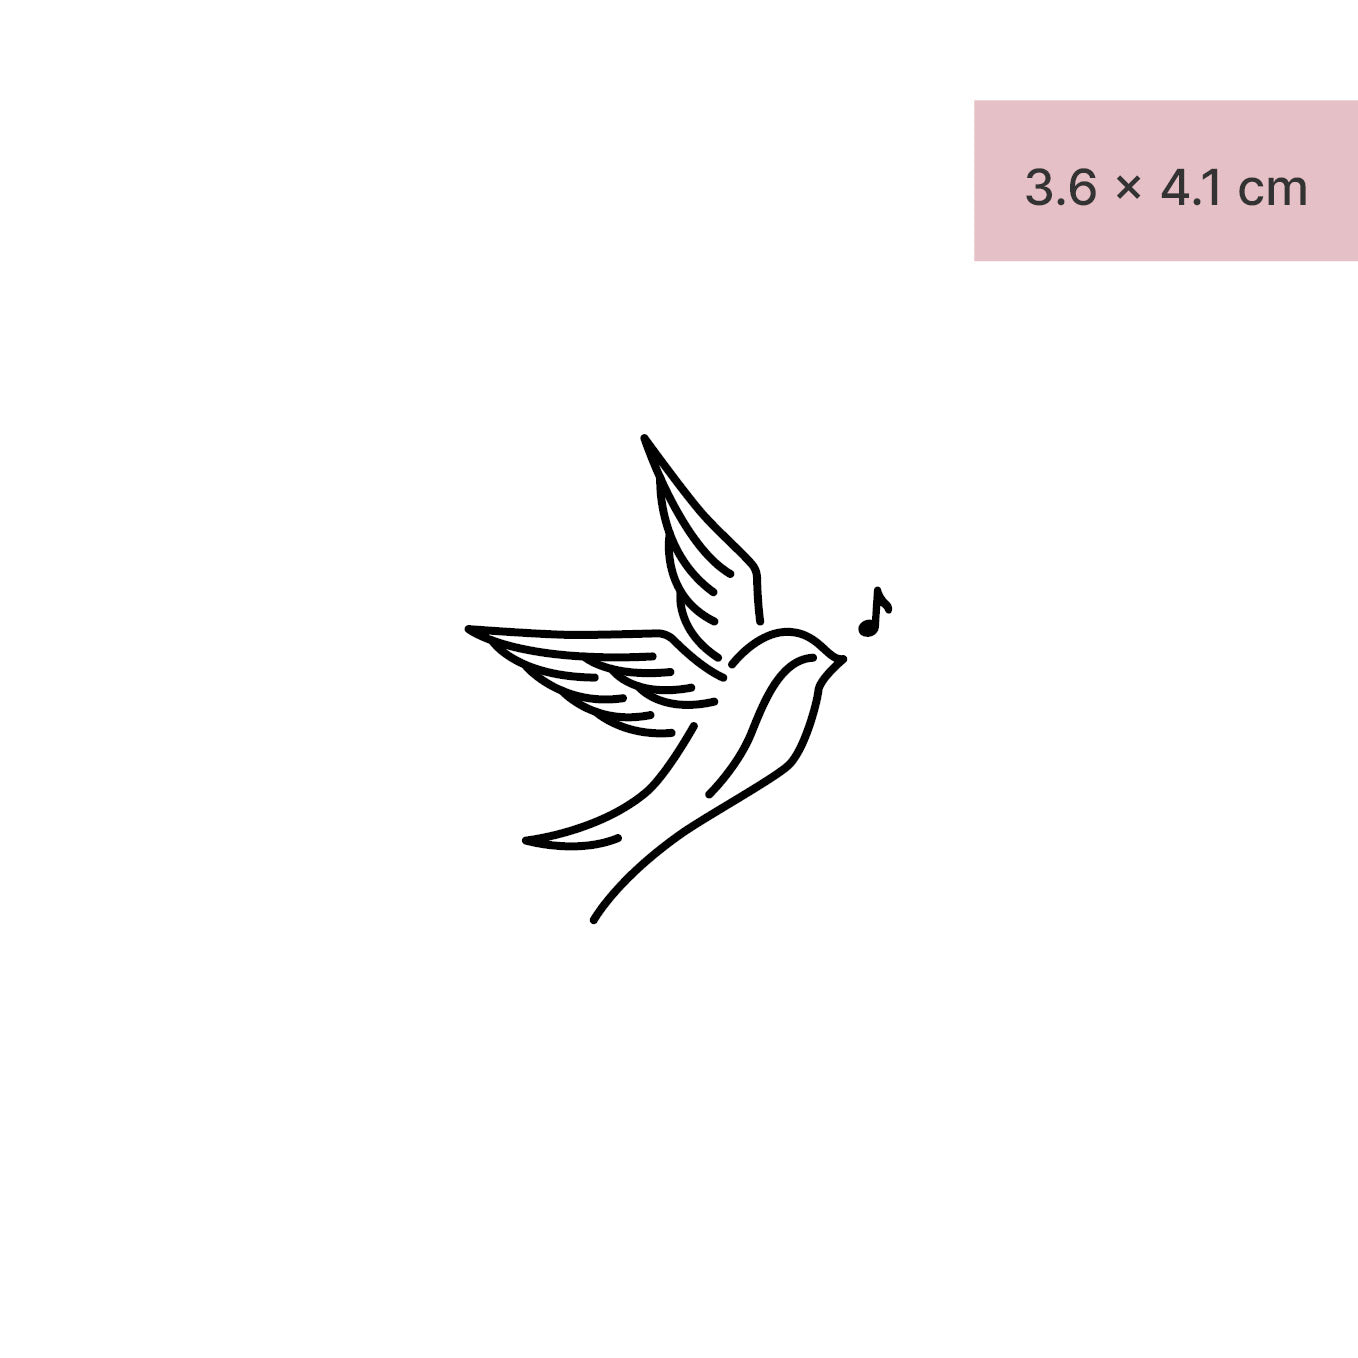 Singender Vogel Tattoo von minink, der Marke für temporäre Tattoos.